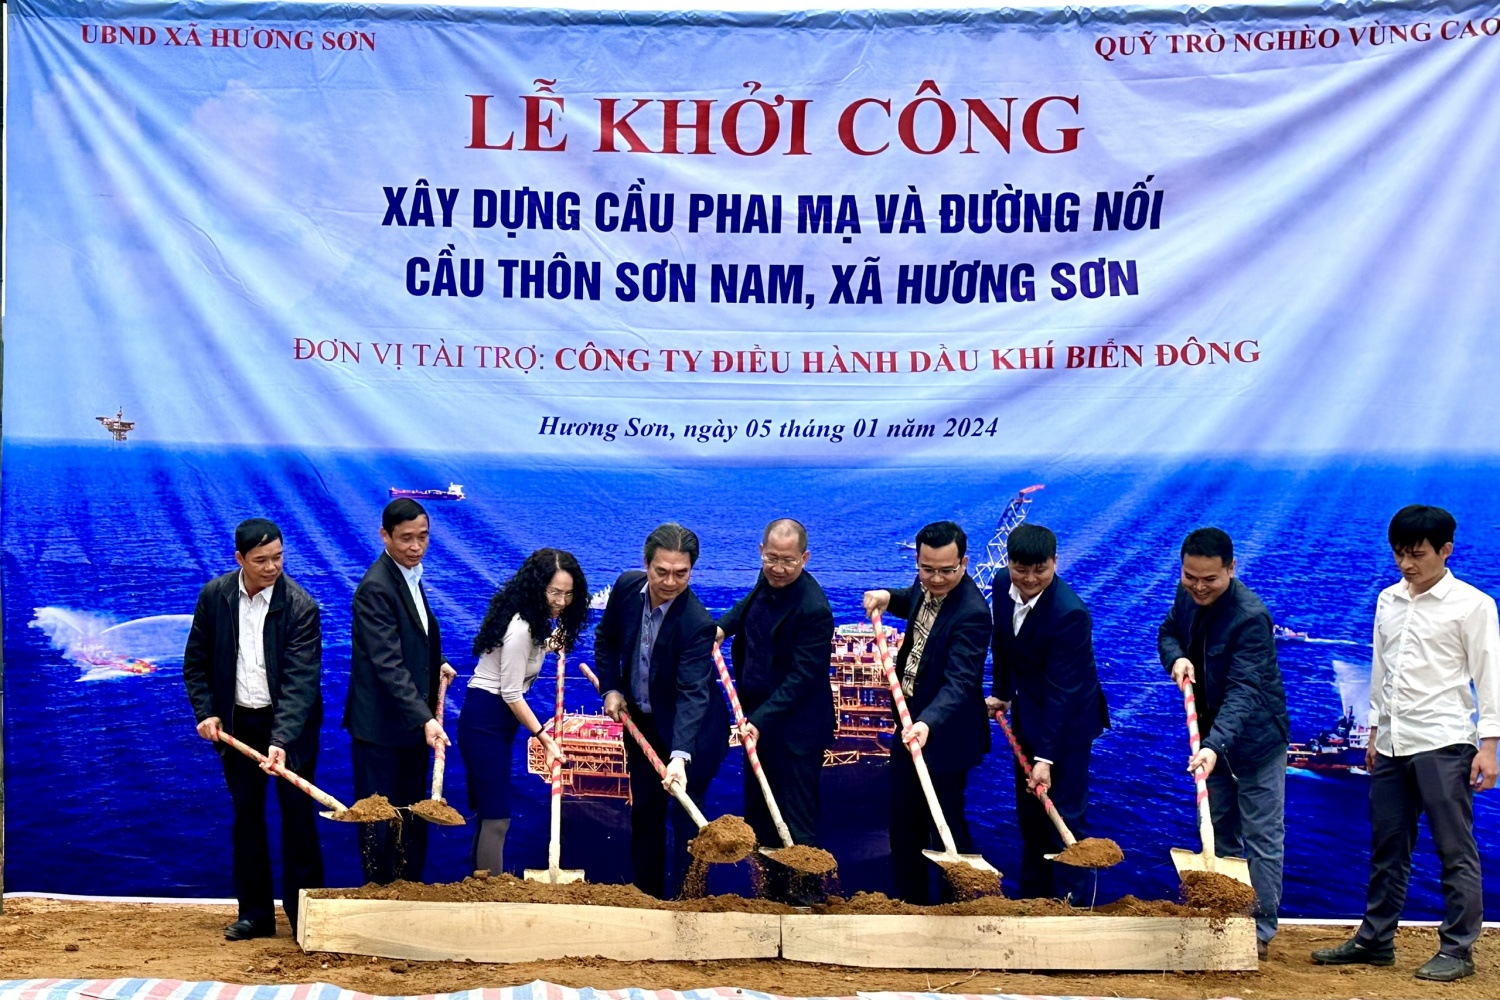 BIENDONG POC tài trợ xây dựng cầu, đường dân sinh tại Hà Giang